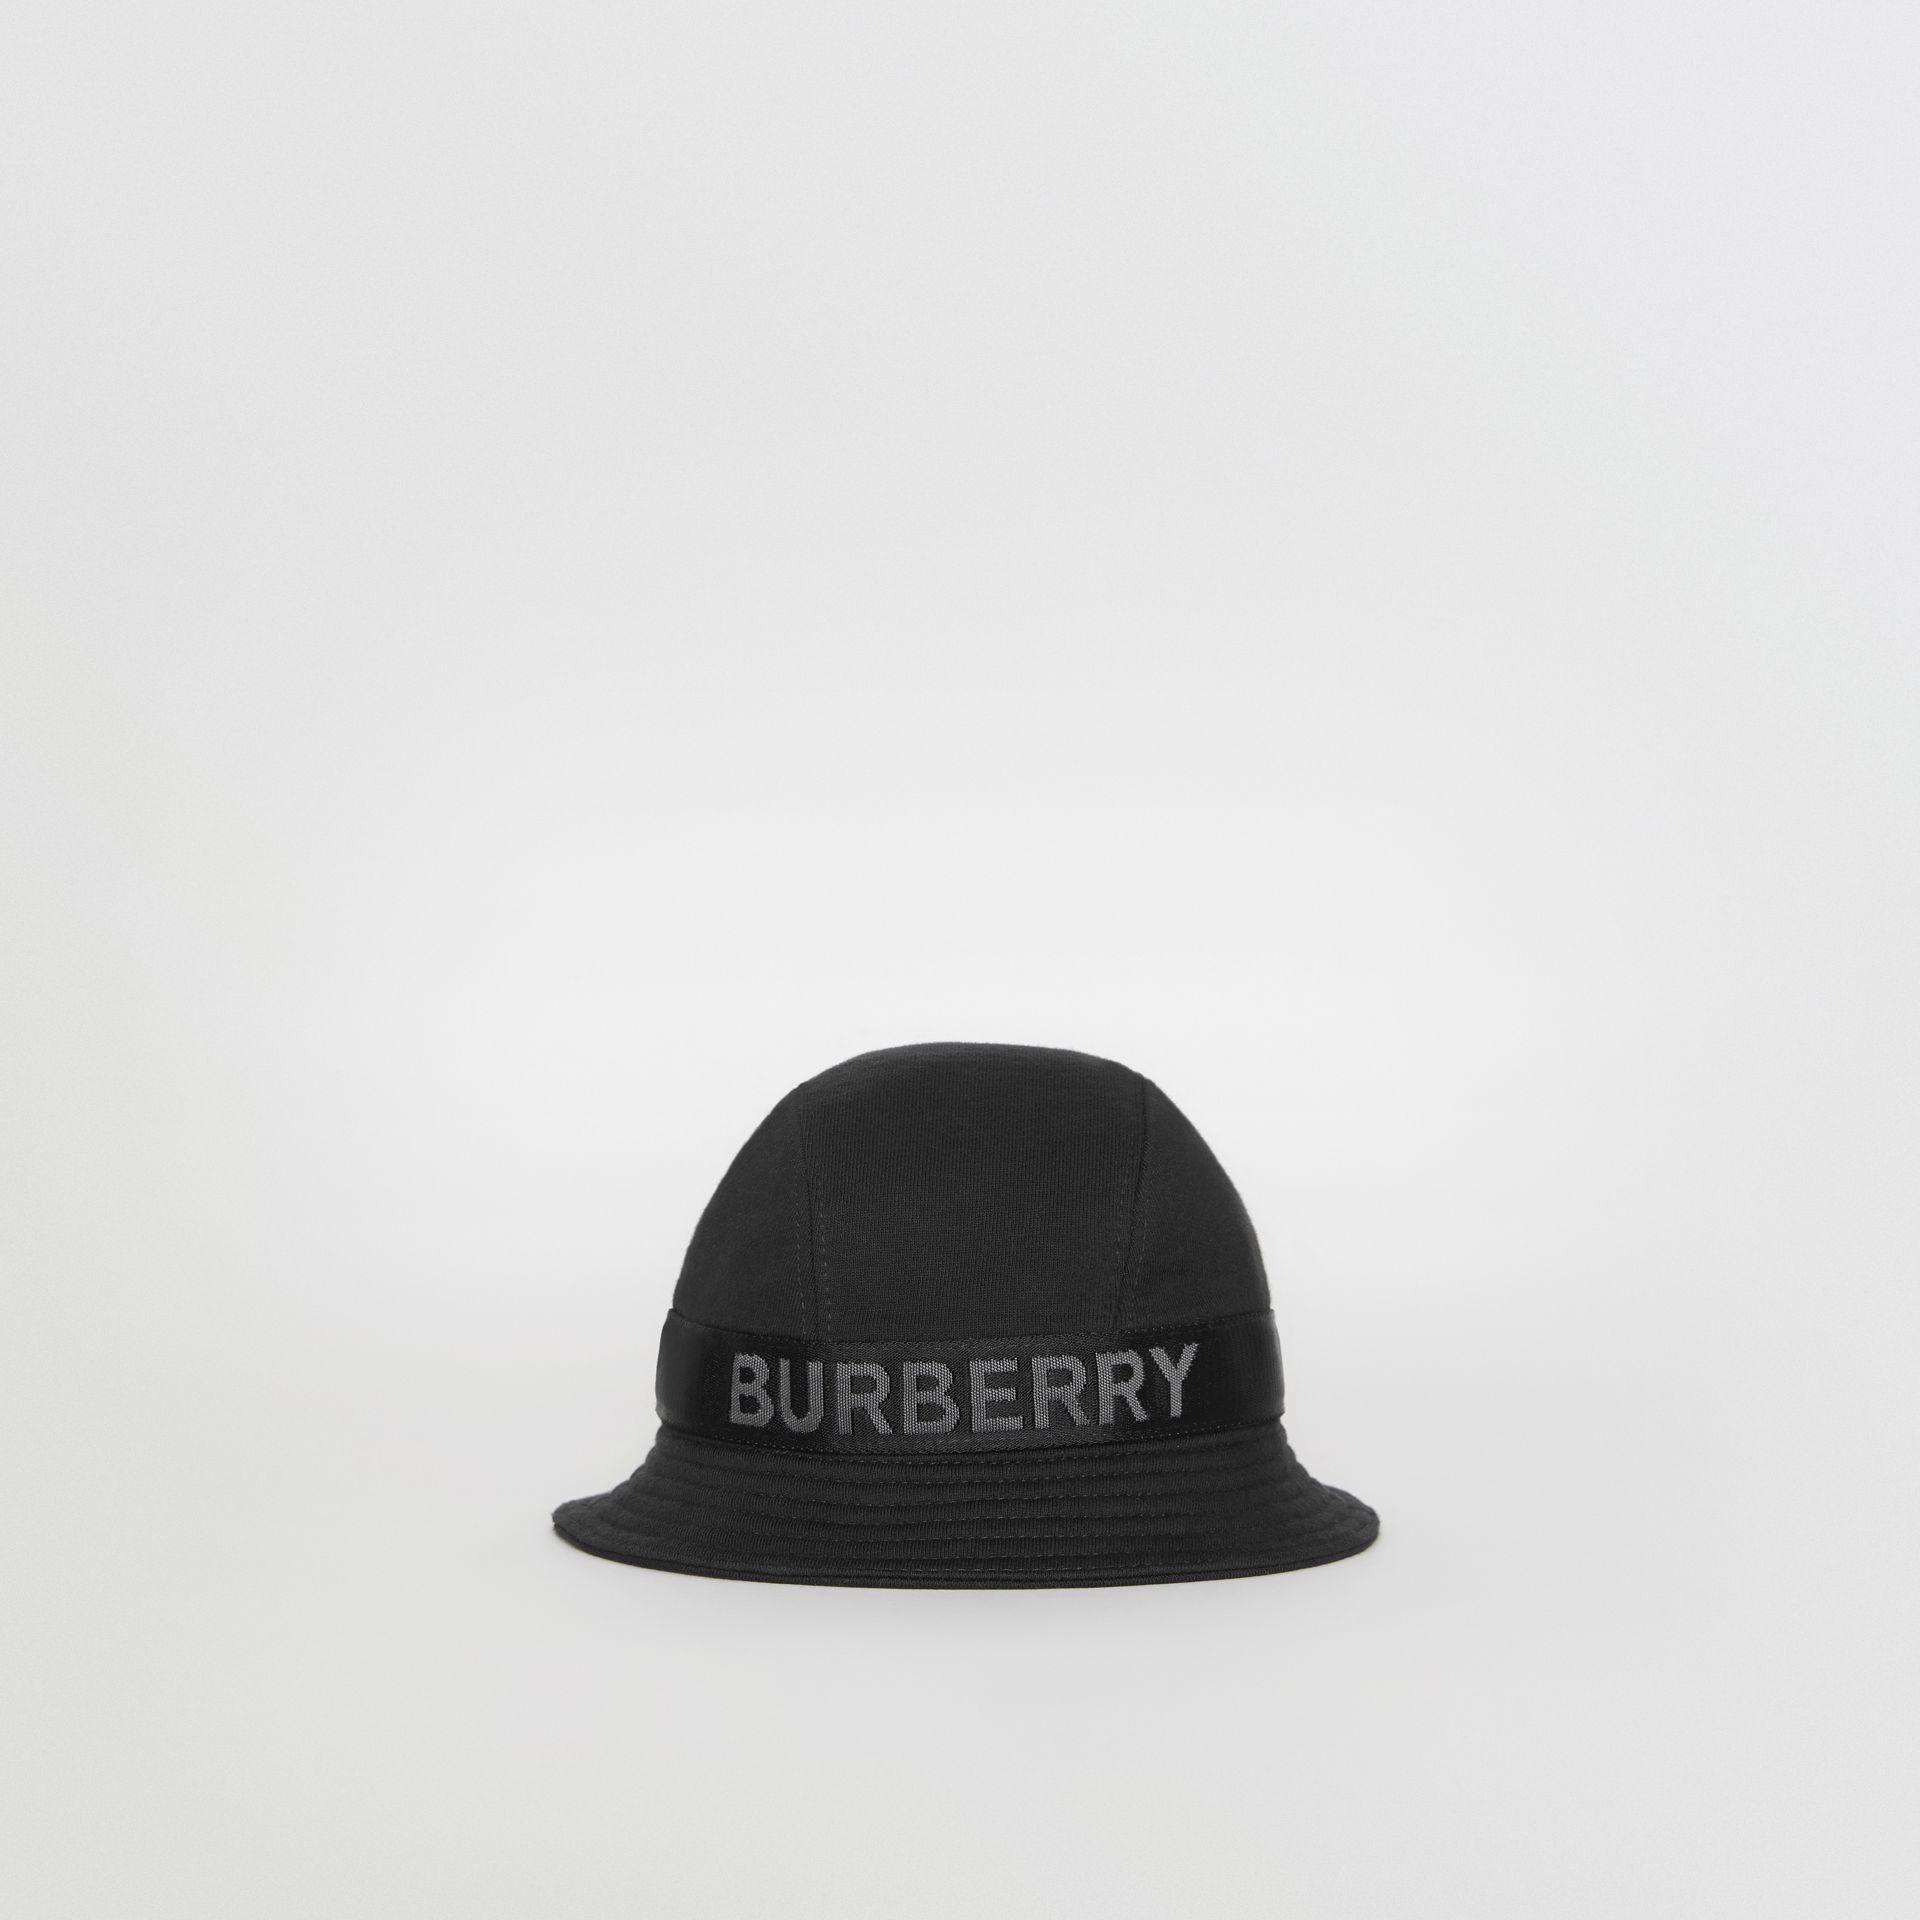 burberry bucket hat black